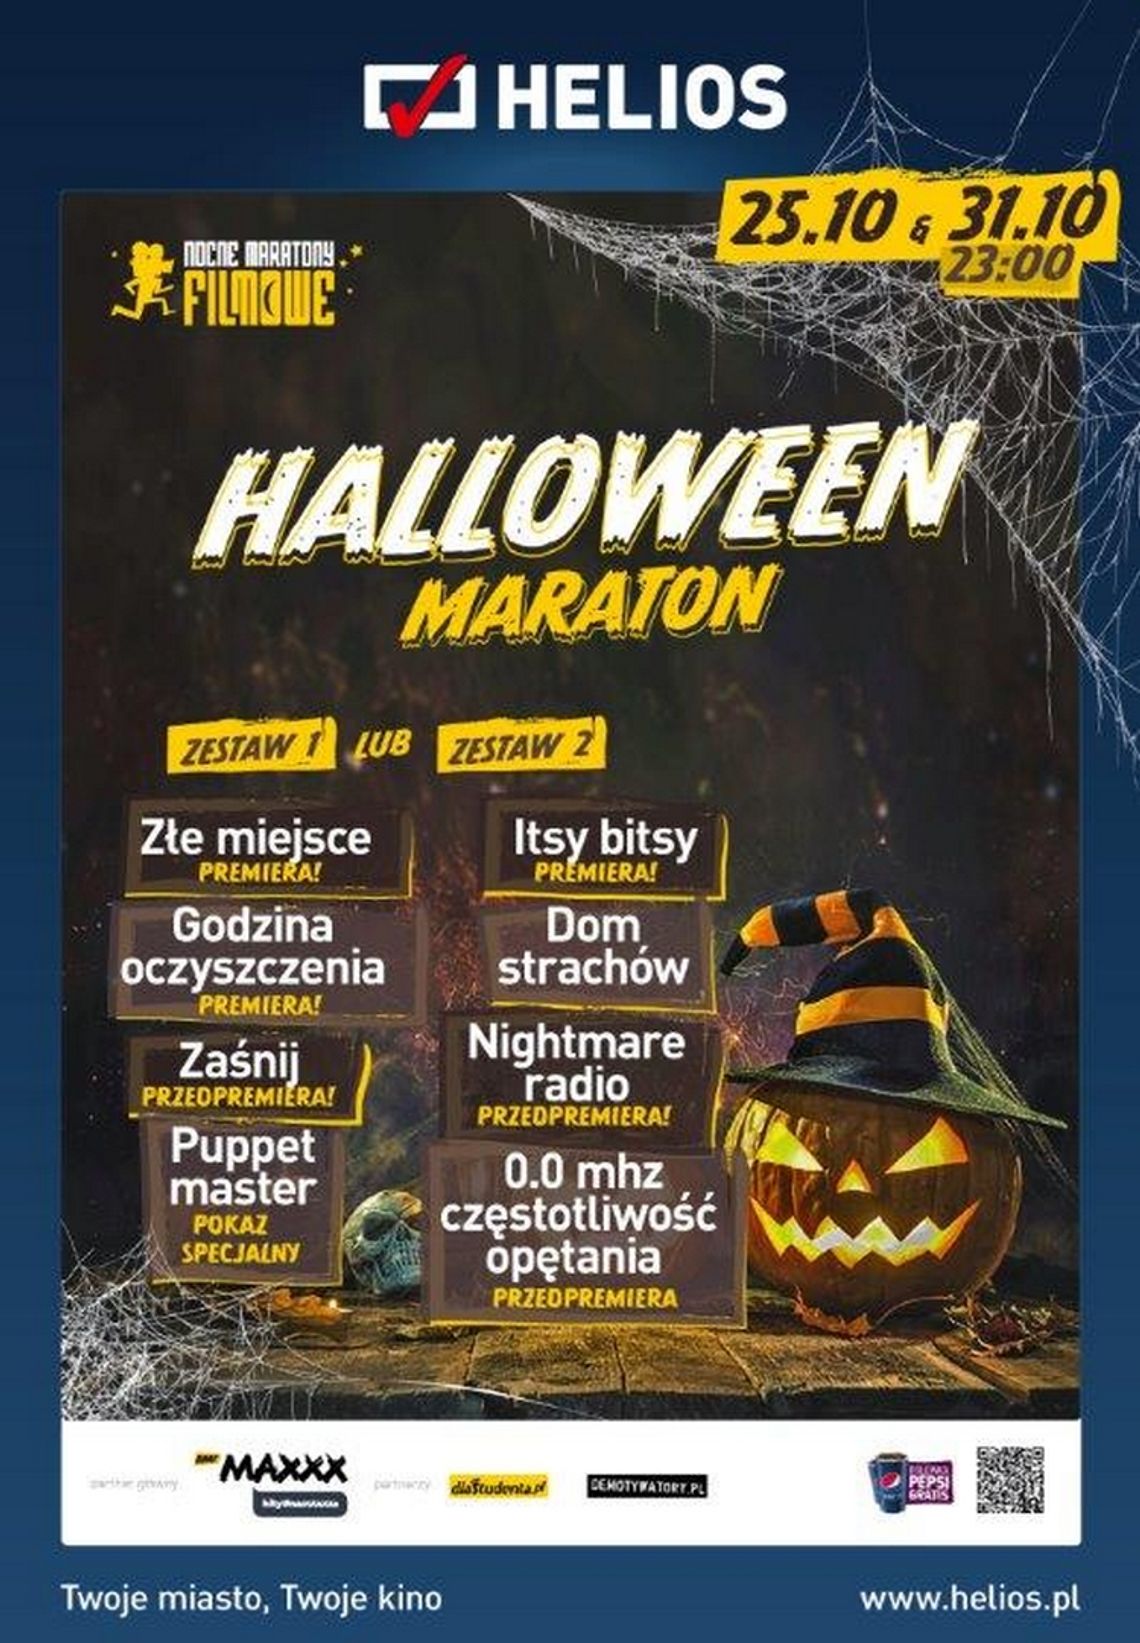 Maraton Halloween 2019